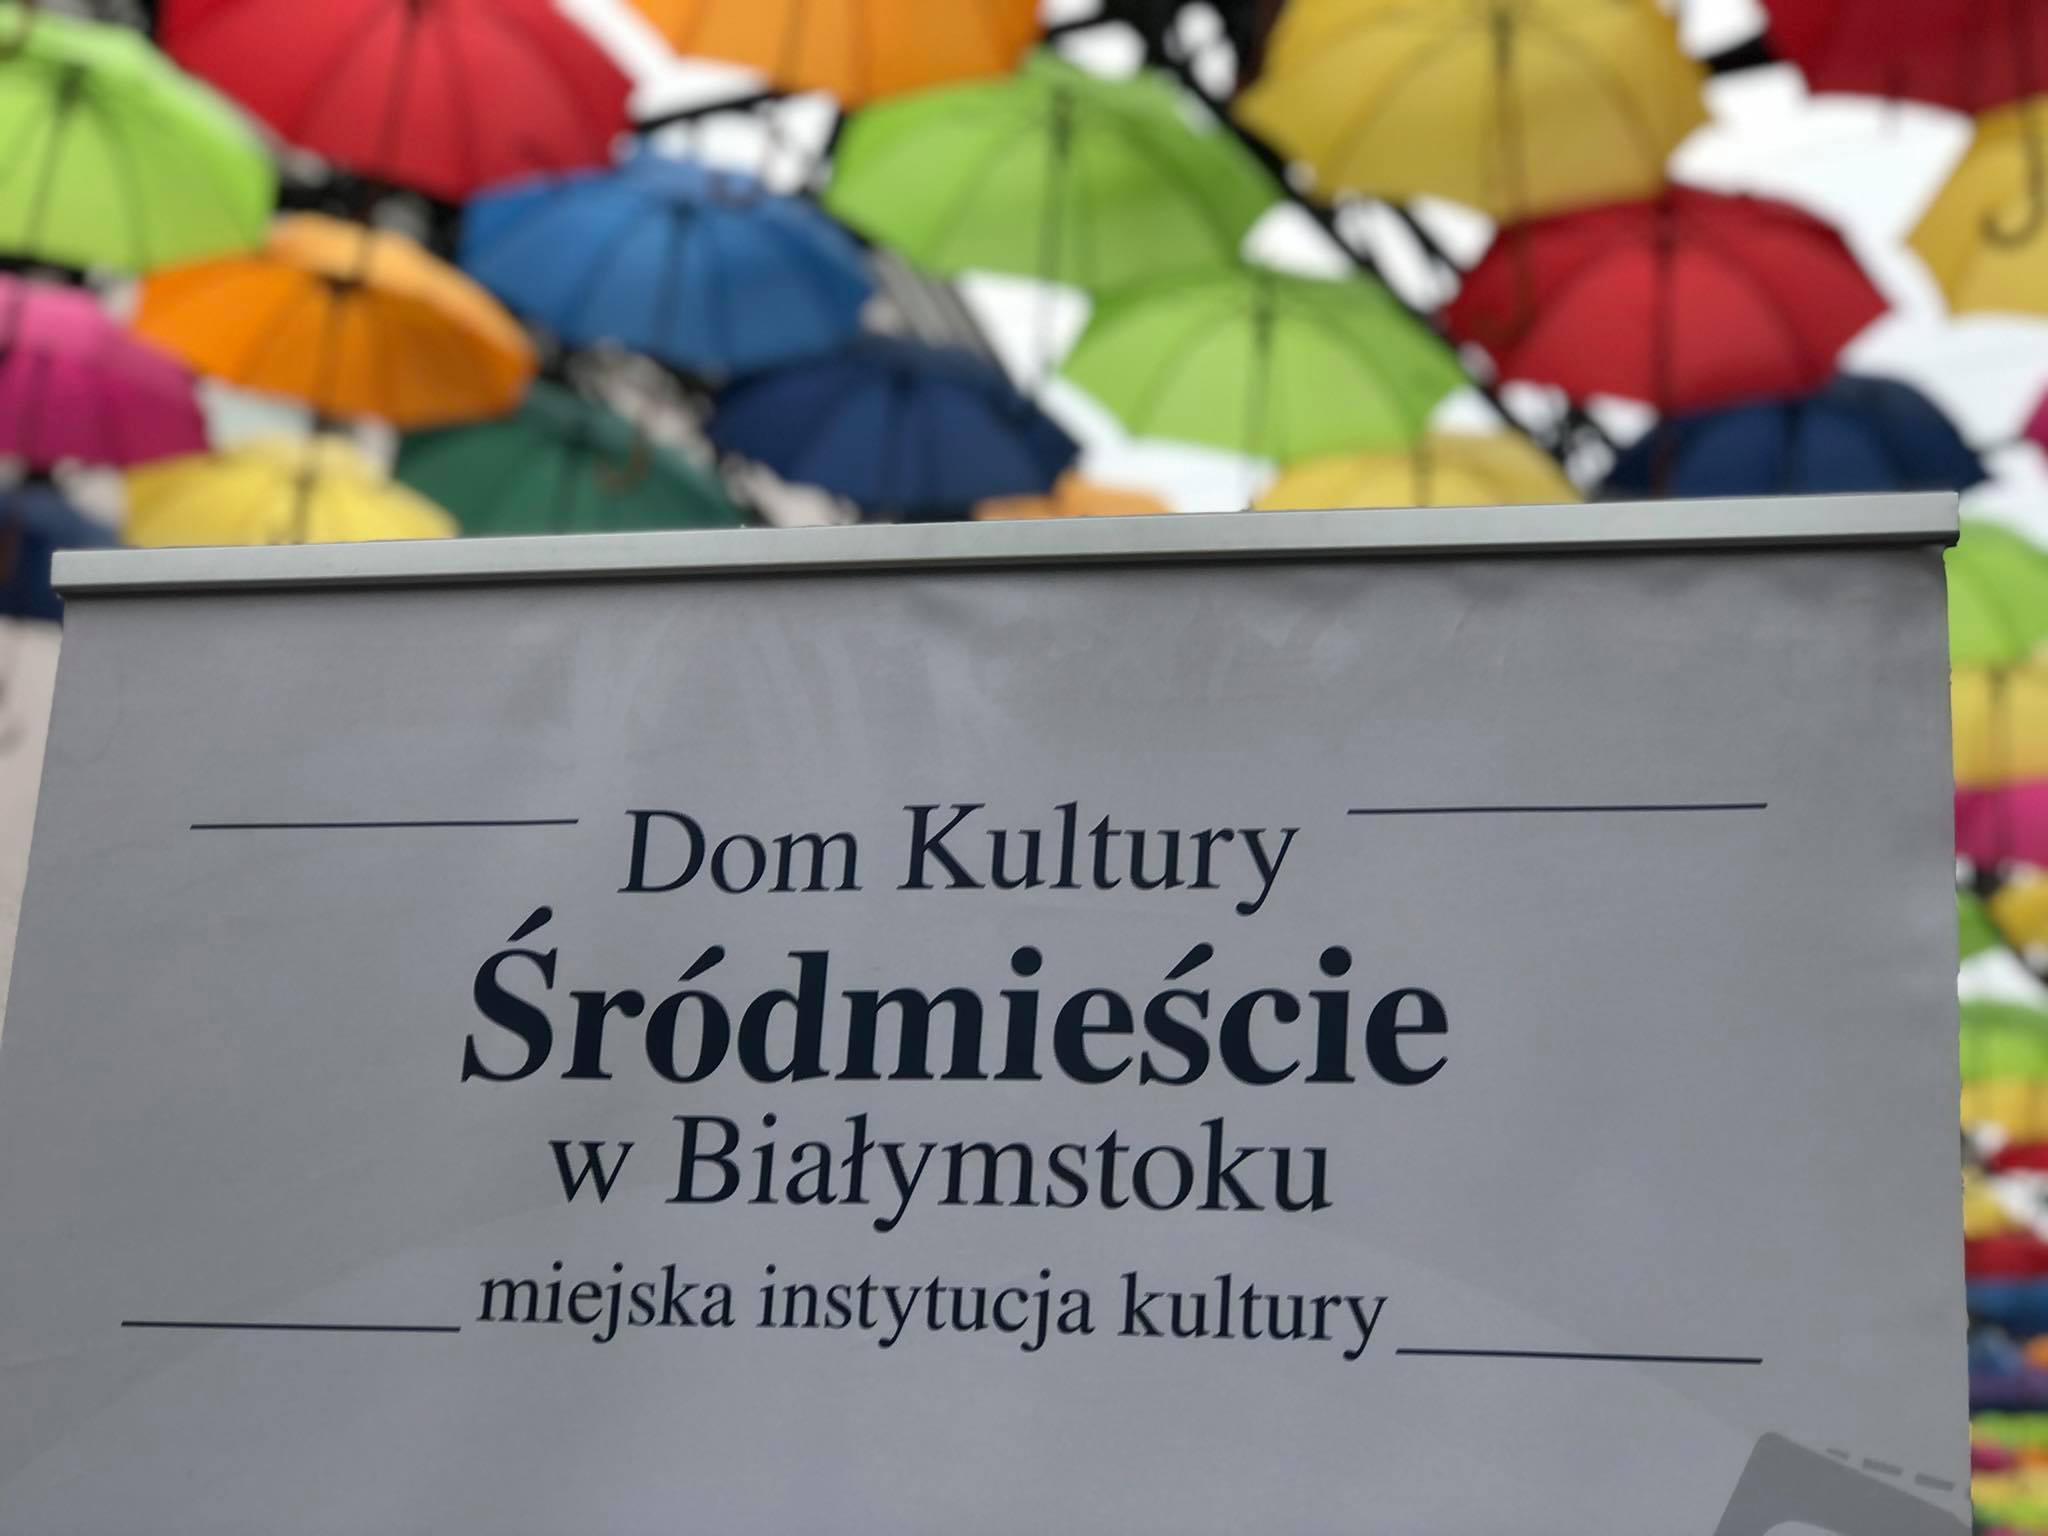 tablica domu kultury śródmieście w białysmtoku na tle kolorowych parasolek